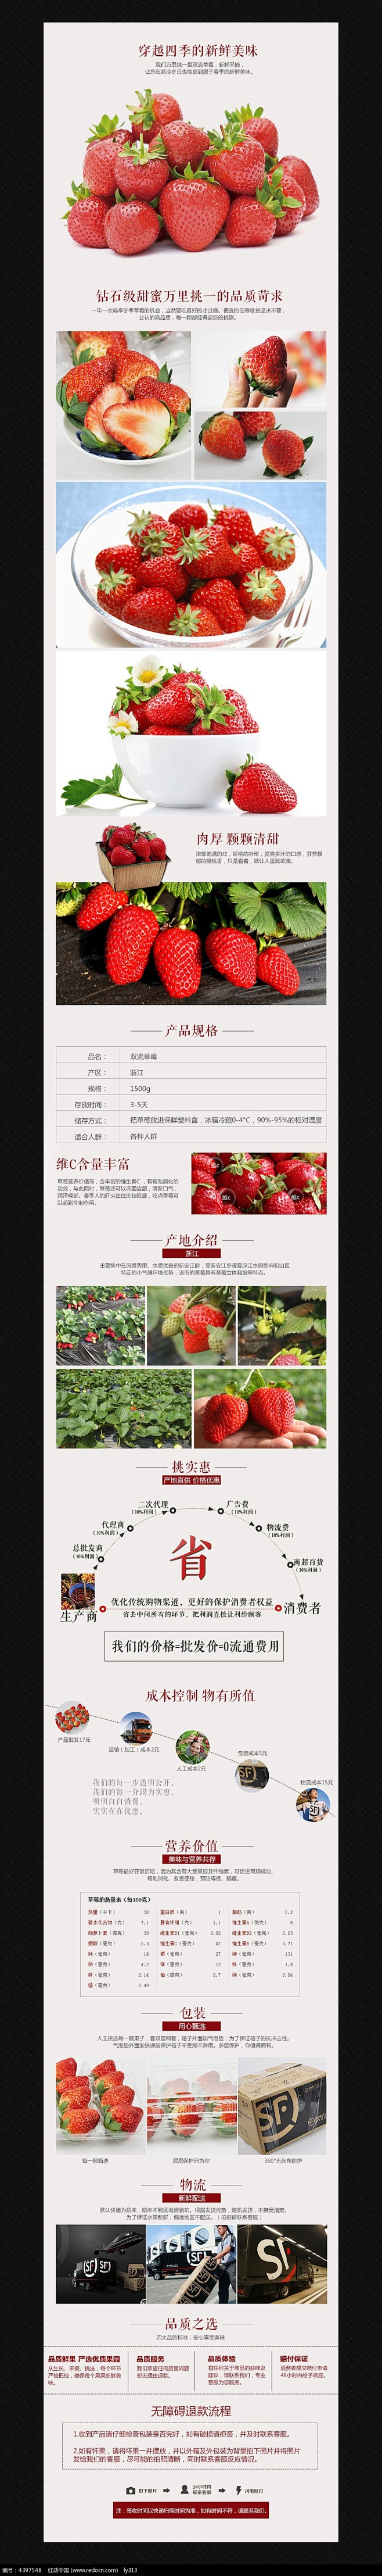 淘宝天猫草莓详情页细节PSD素材模板图片